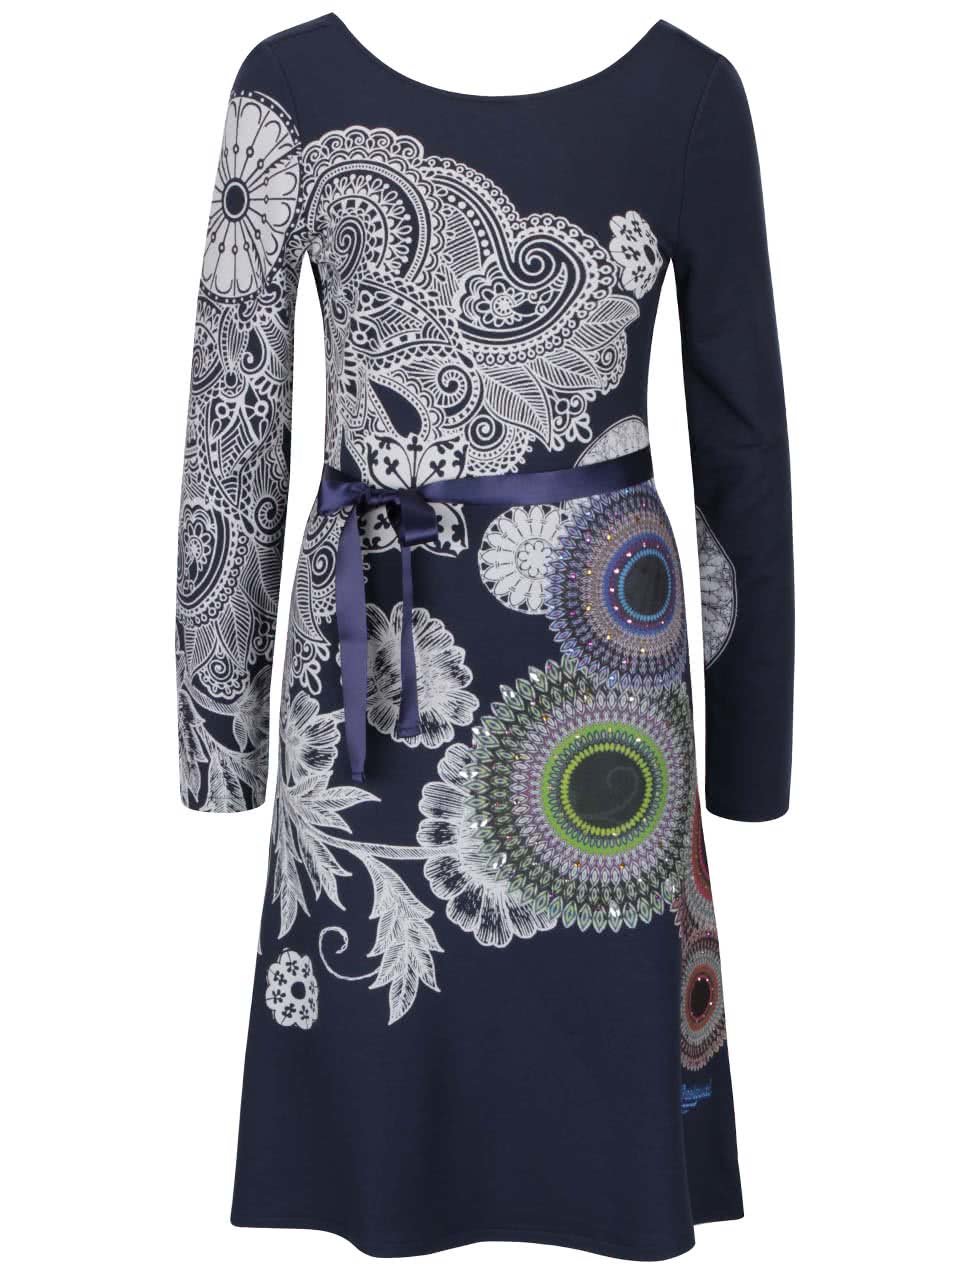 Béžovo-modré šaty s ornamenty a dlouhým rukávem Desigual Anais